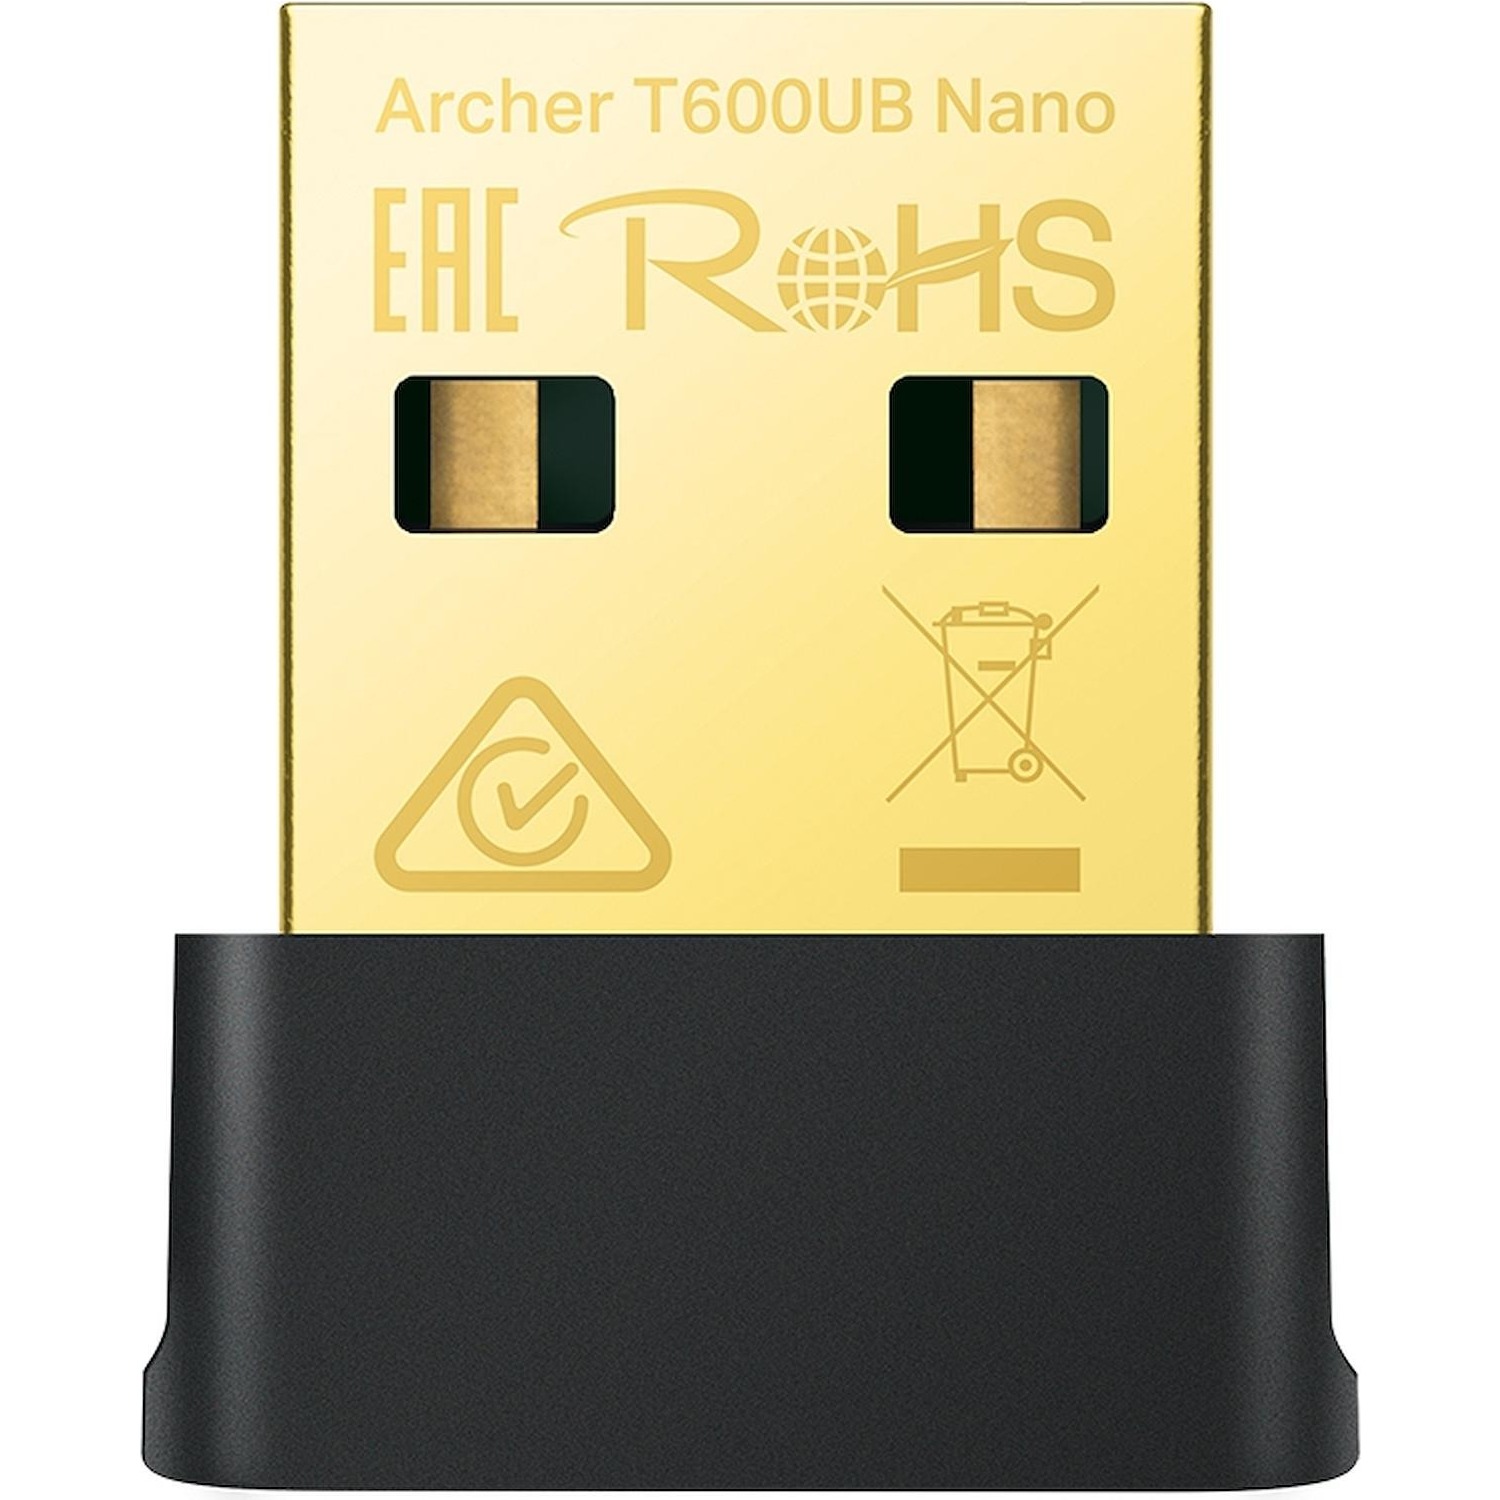 Immagine per Adattatore Wi-Fi USB TP-LINK Archer T600UB nano da DIMOStore